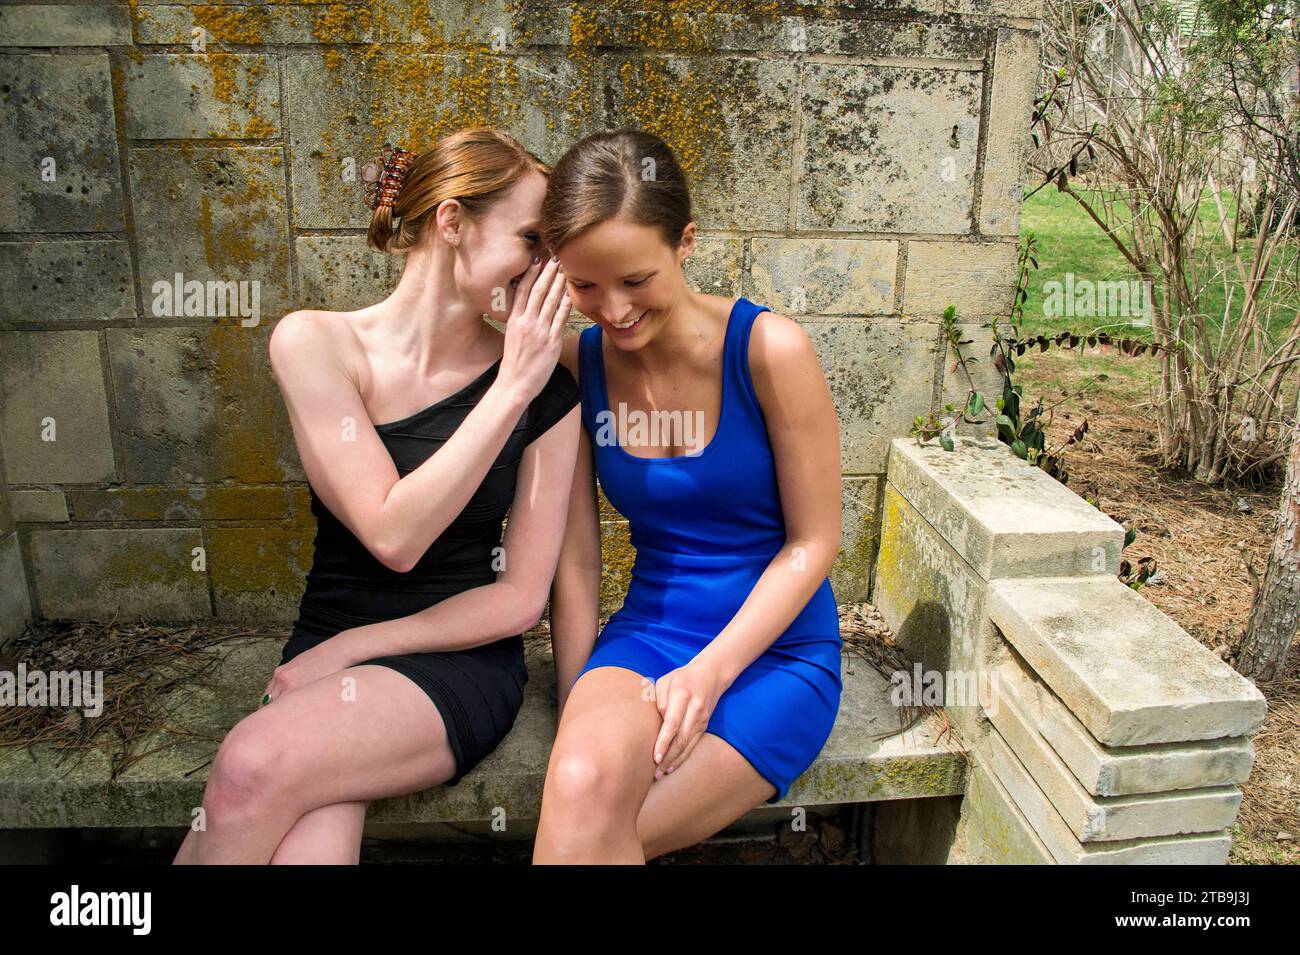 Zwei junge Frauen in Minikleidern sitzen auf einer Bank in einem Gartenbereich und flüstern einander Geheimnisse zu; Lincoln, Nebraska, USA Stockfoto